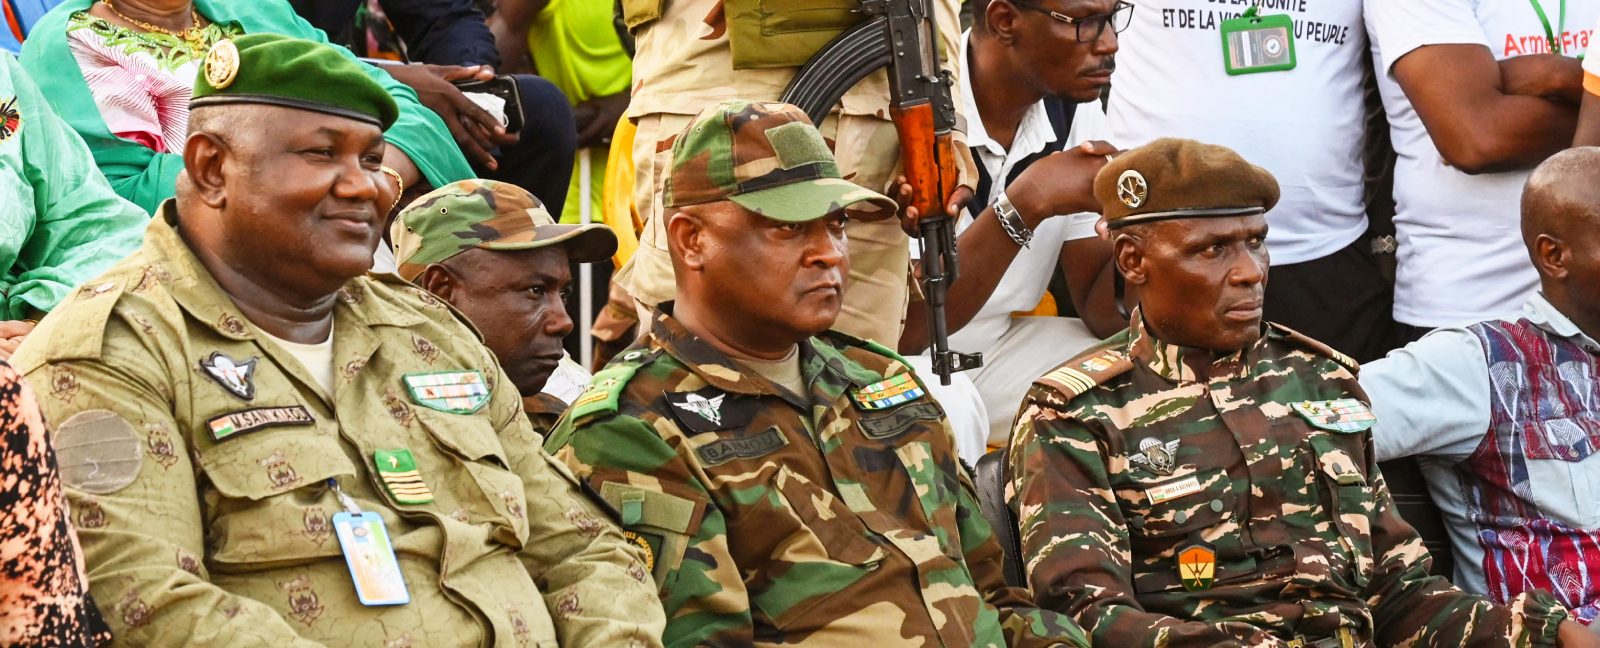 Au Niger, le coup d’État annule des gains durement acquis